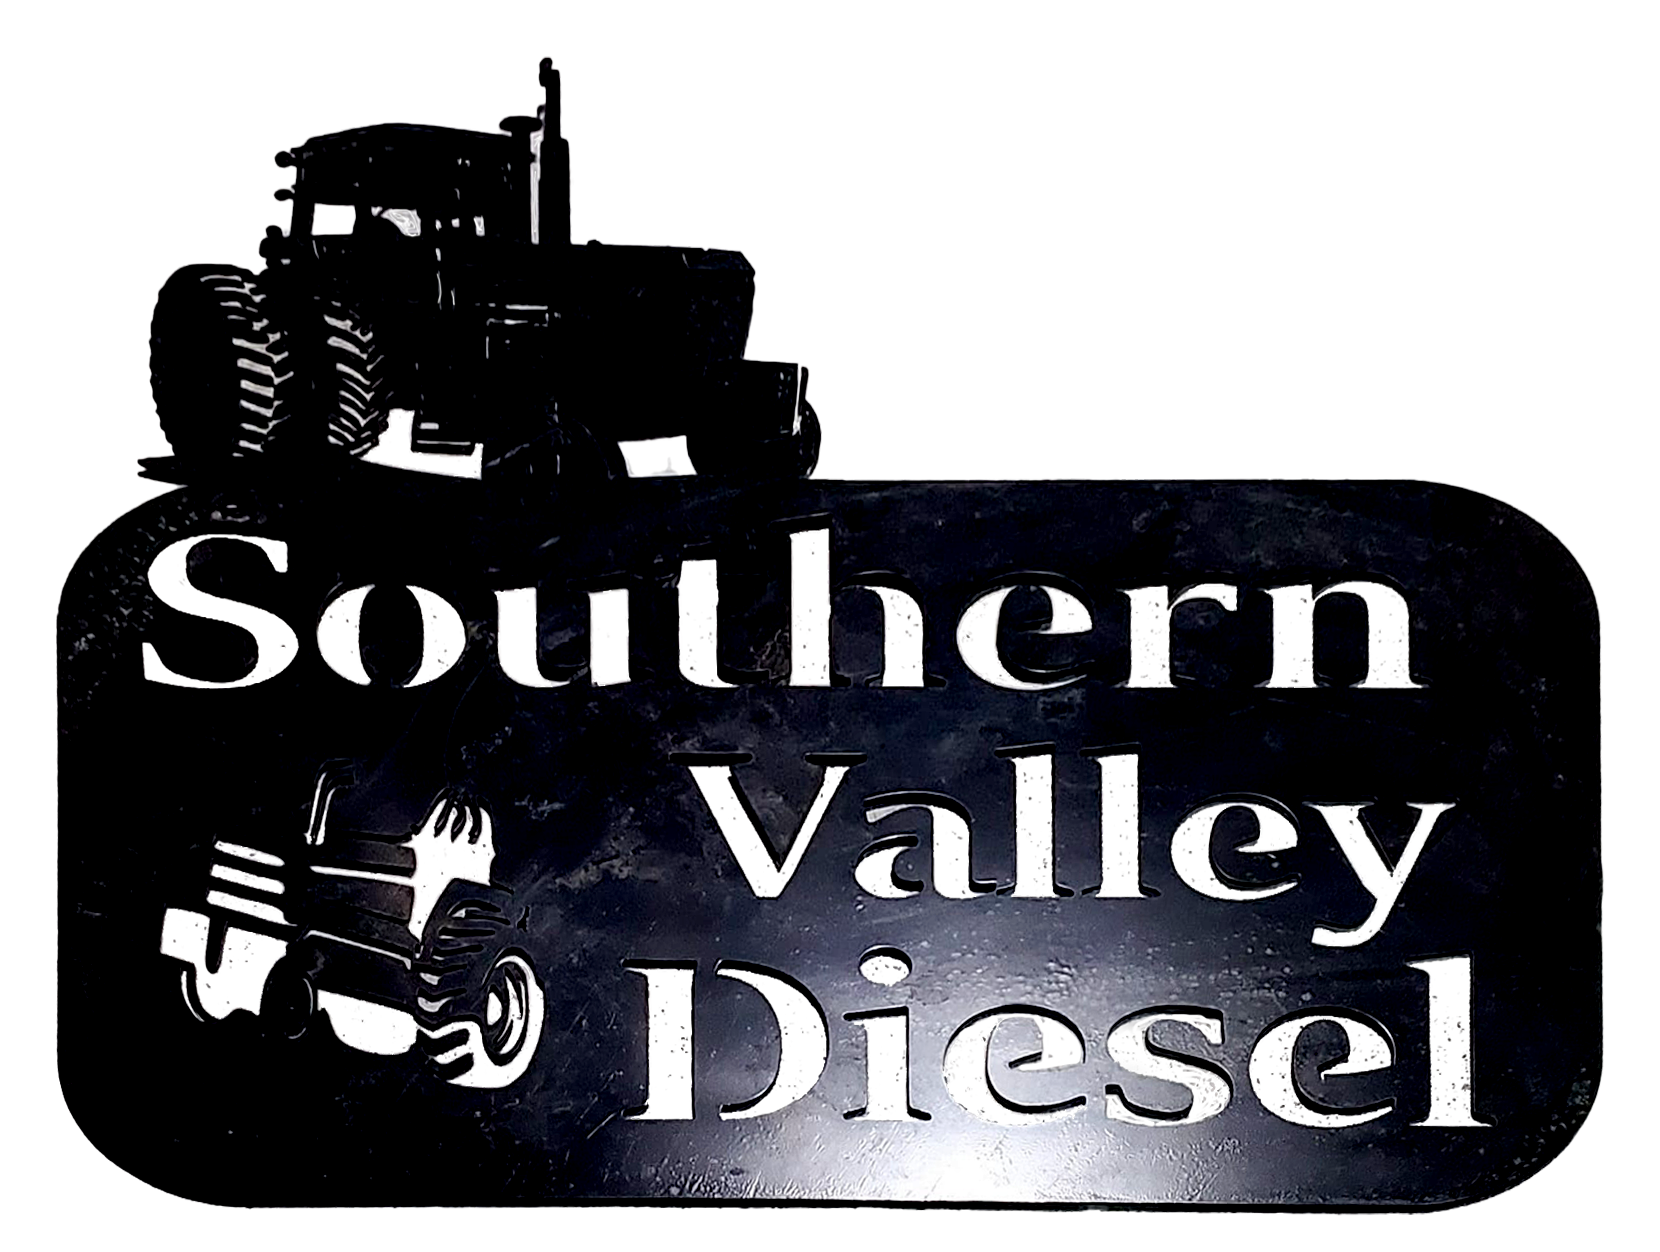 Southern Valley Diesel